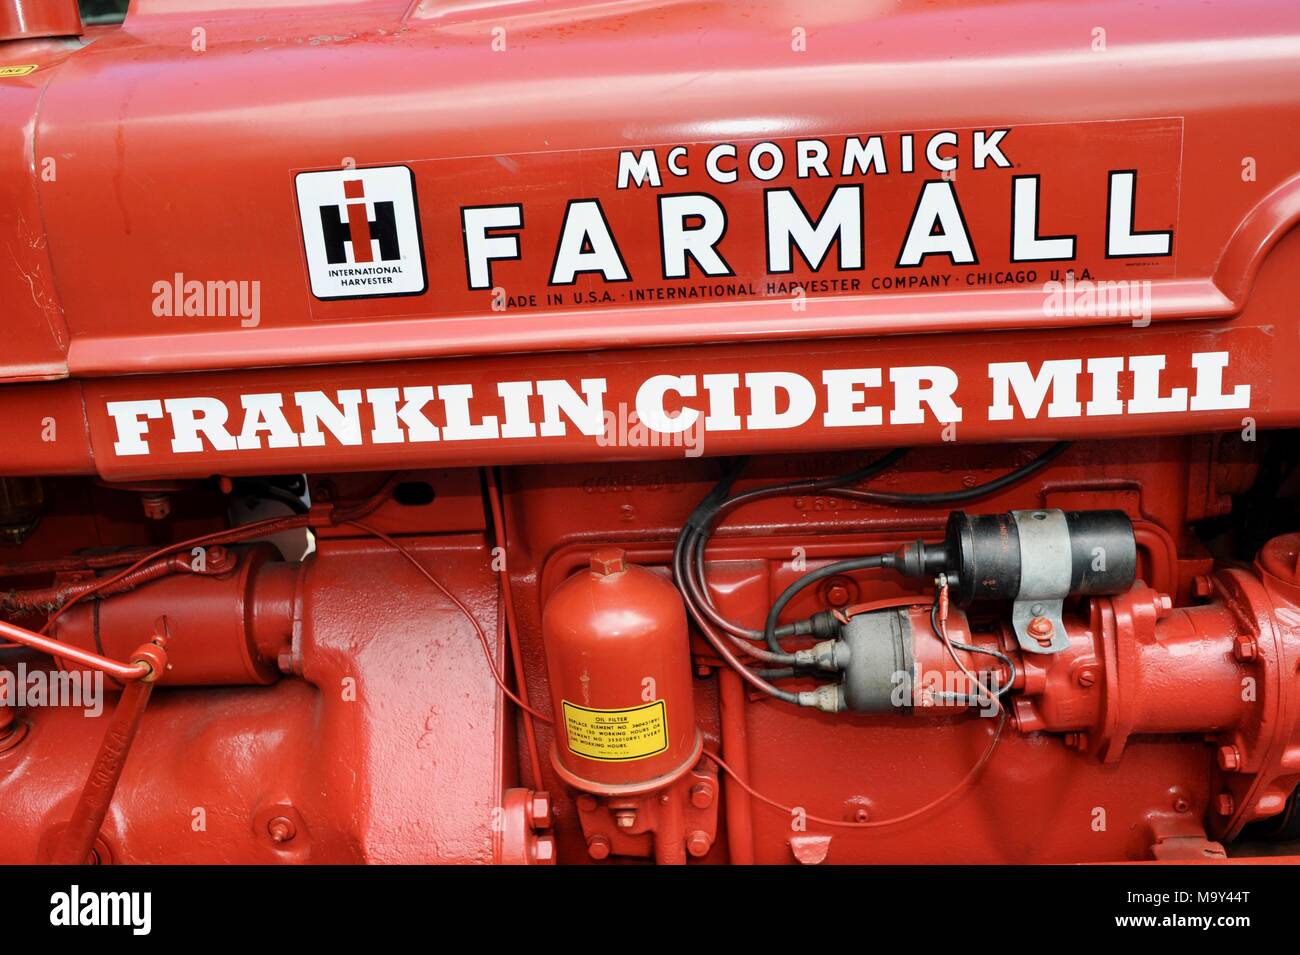 Tracteur McCormick Farmall rouge avec nom écrit sur le côté historique de Franklin 1837 Cidrerie, Bloomfield Hills, Michigan, USA. Banque D'Images